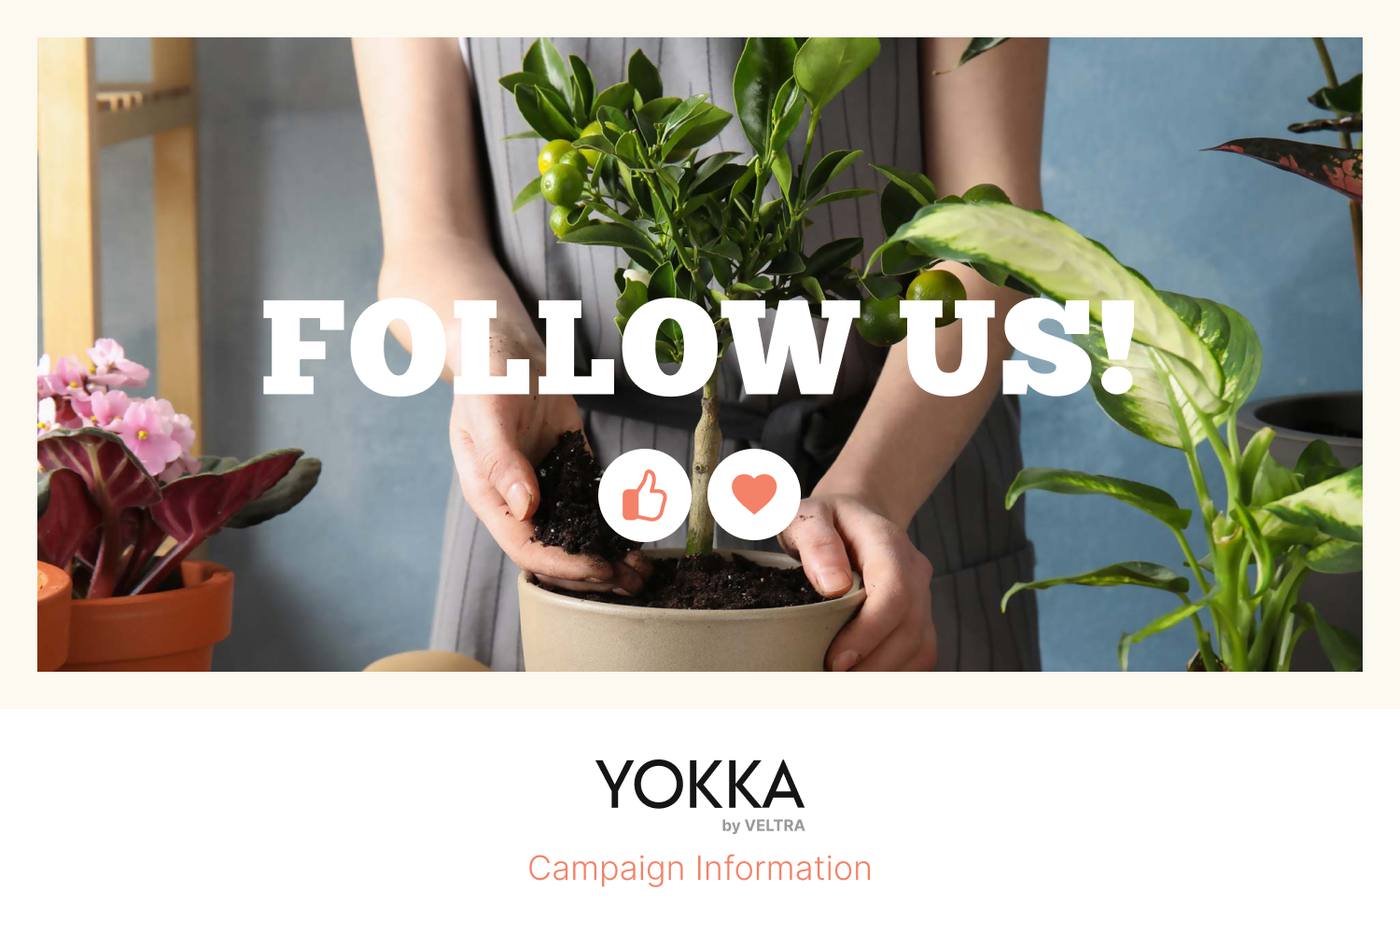 (終了しました) 6月4日締め切り！YOKKAキャンペーンに参加してみよっか！Wキャンペーン実施中 image